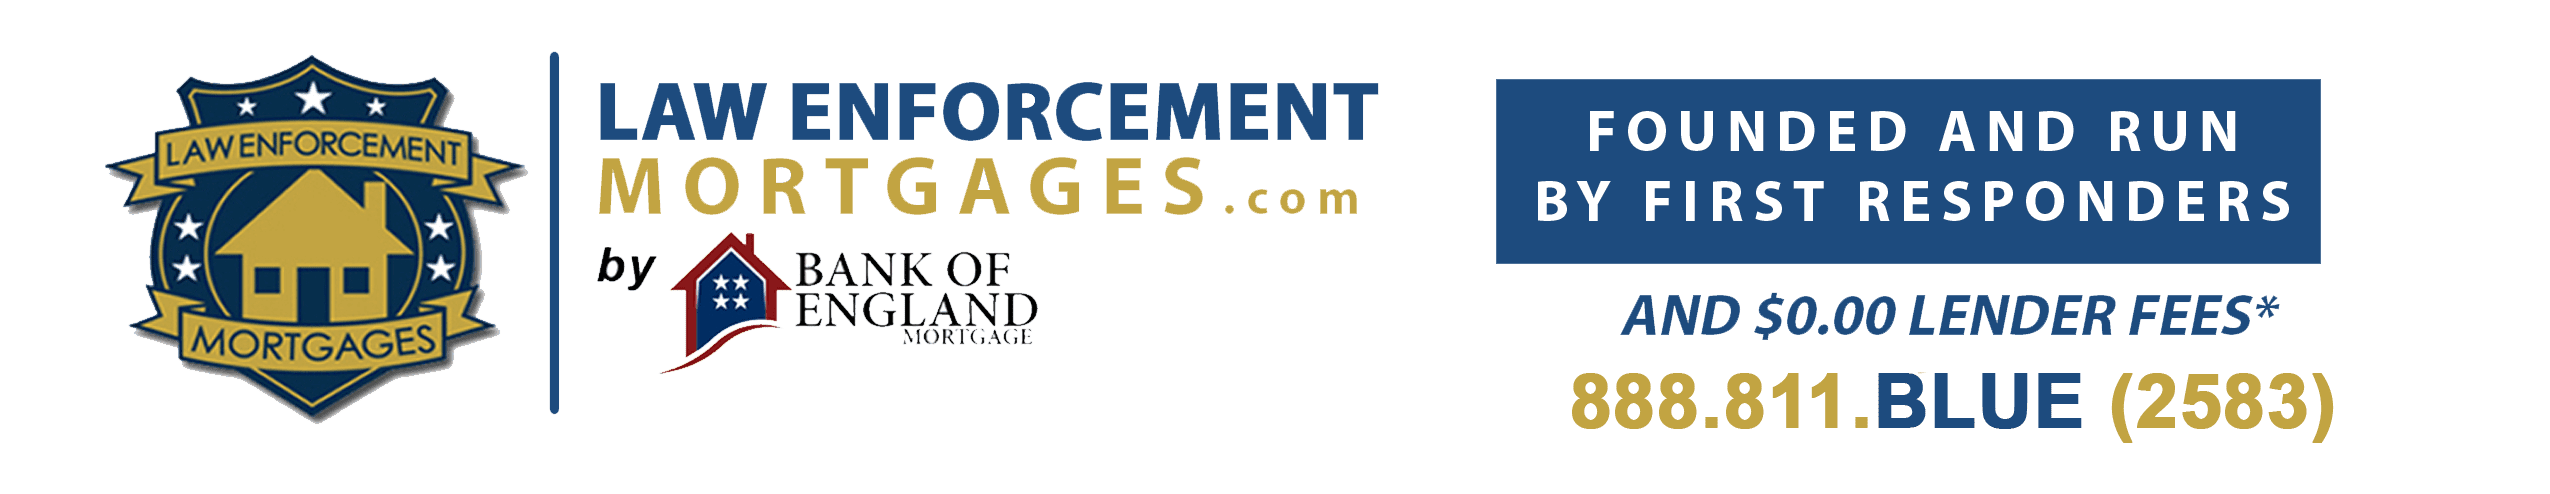 LawEnforcementMortgages.com